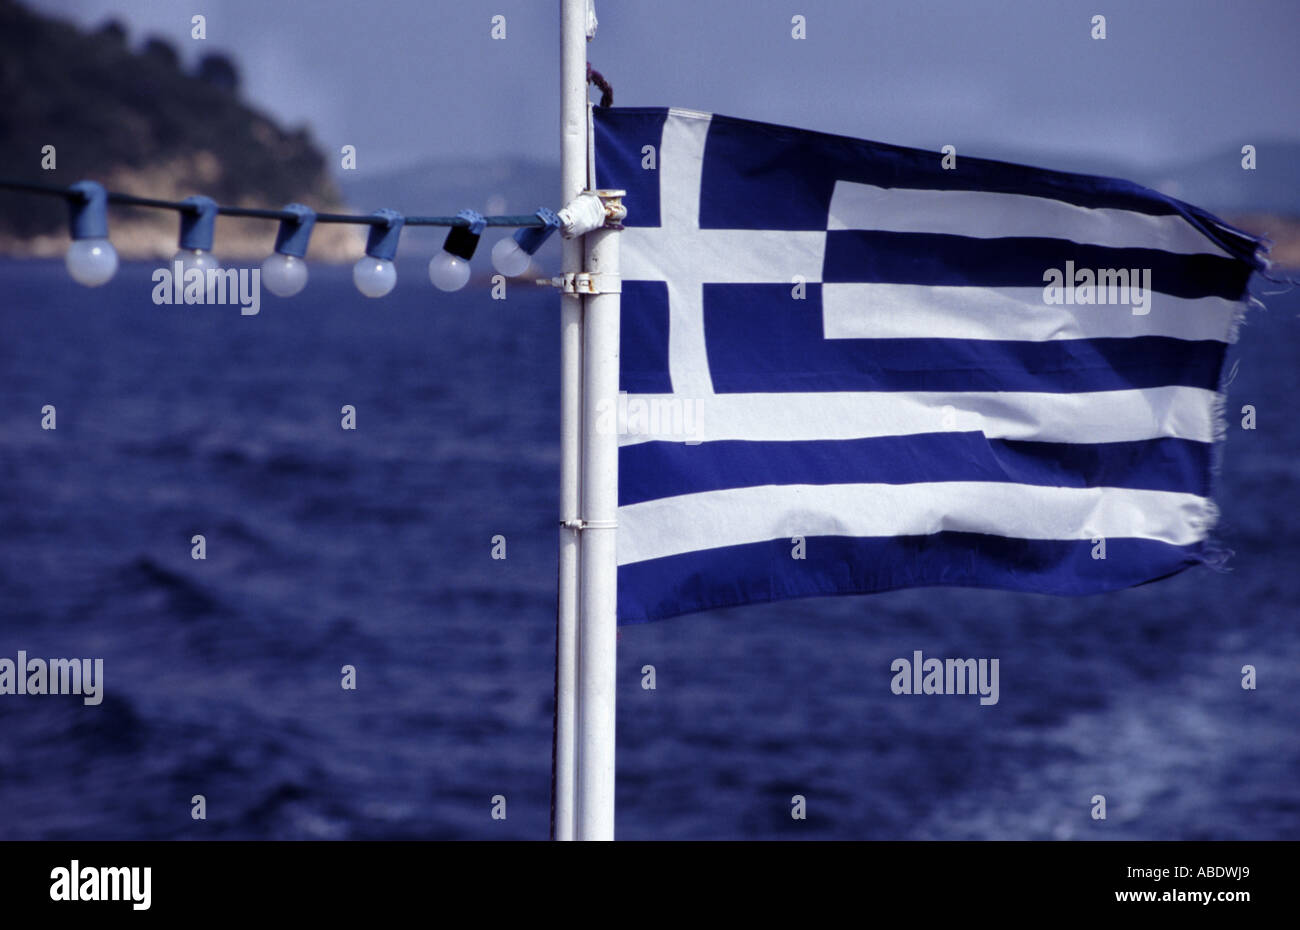 La liberté OU LA MORT 02 drapeau grec sur le navire en mer C'EST 1 DE 2 PICS SEMBLABLES ET DE 1 200 TOTAL PHOTOS Banque D'Images